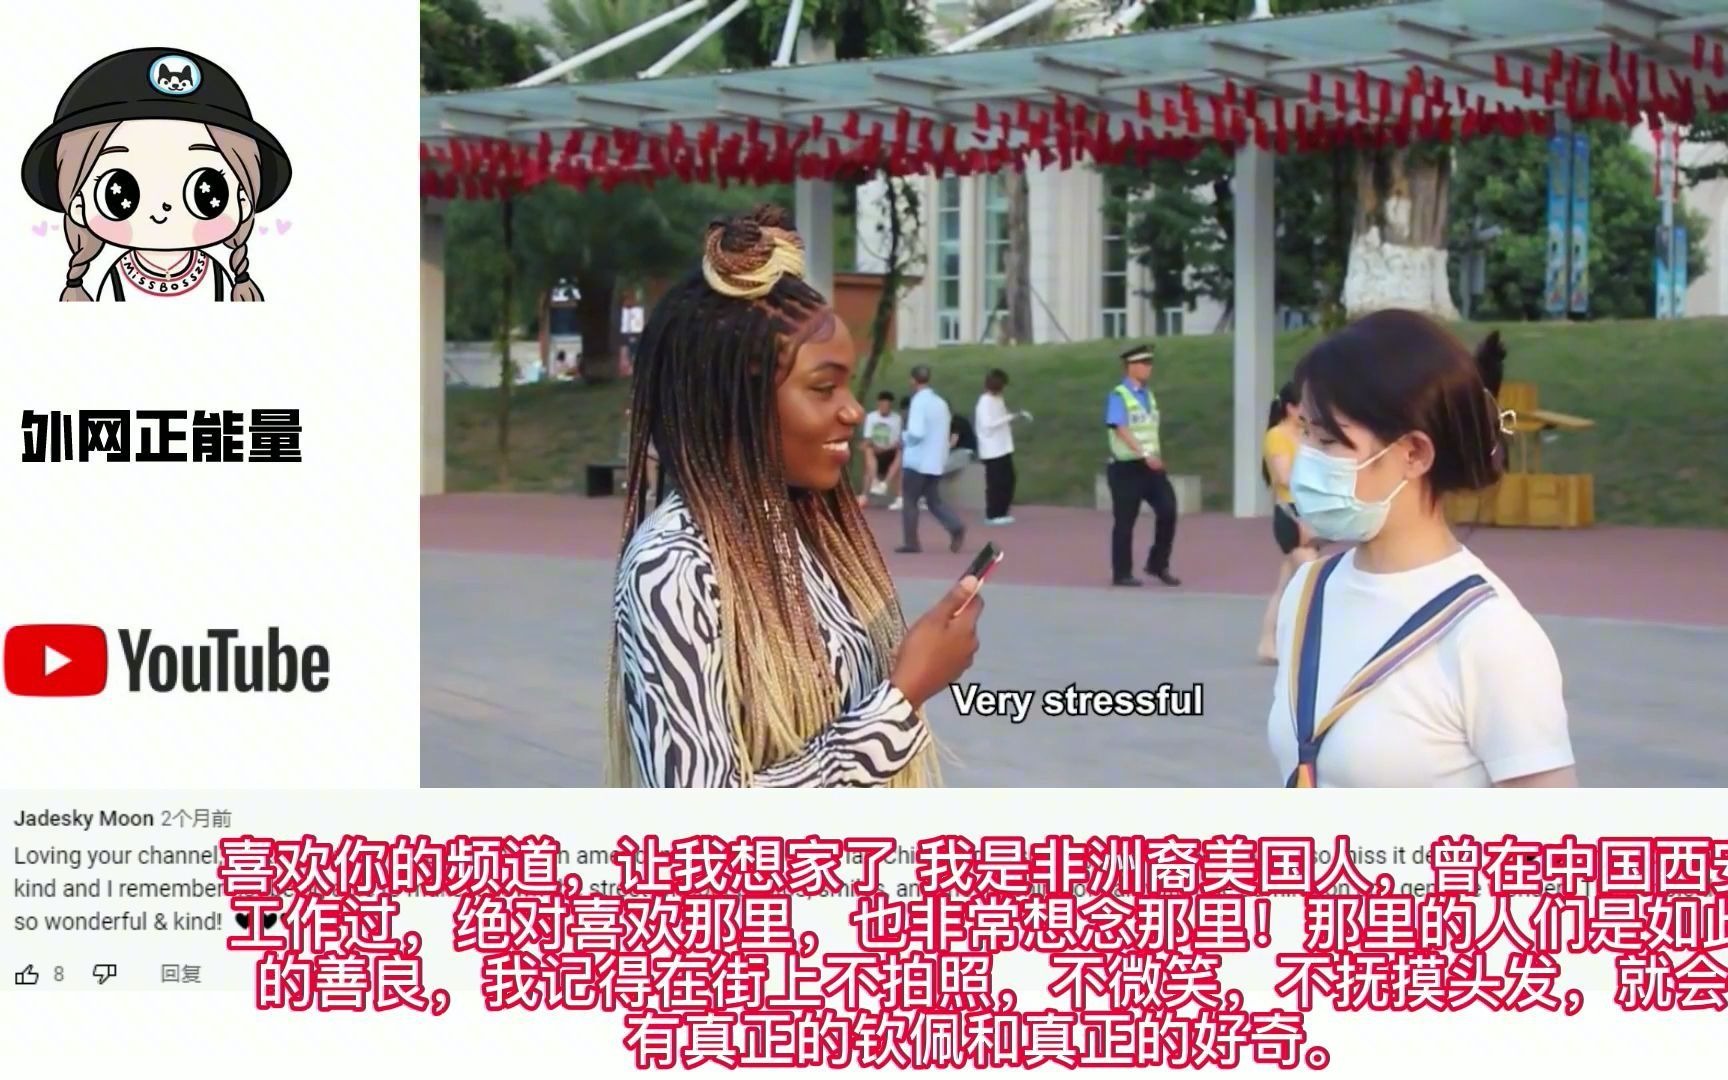 中国人对非洲辫子反应老外震惊 外国网友 如此友好我很想就去中国